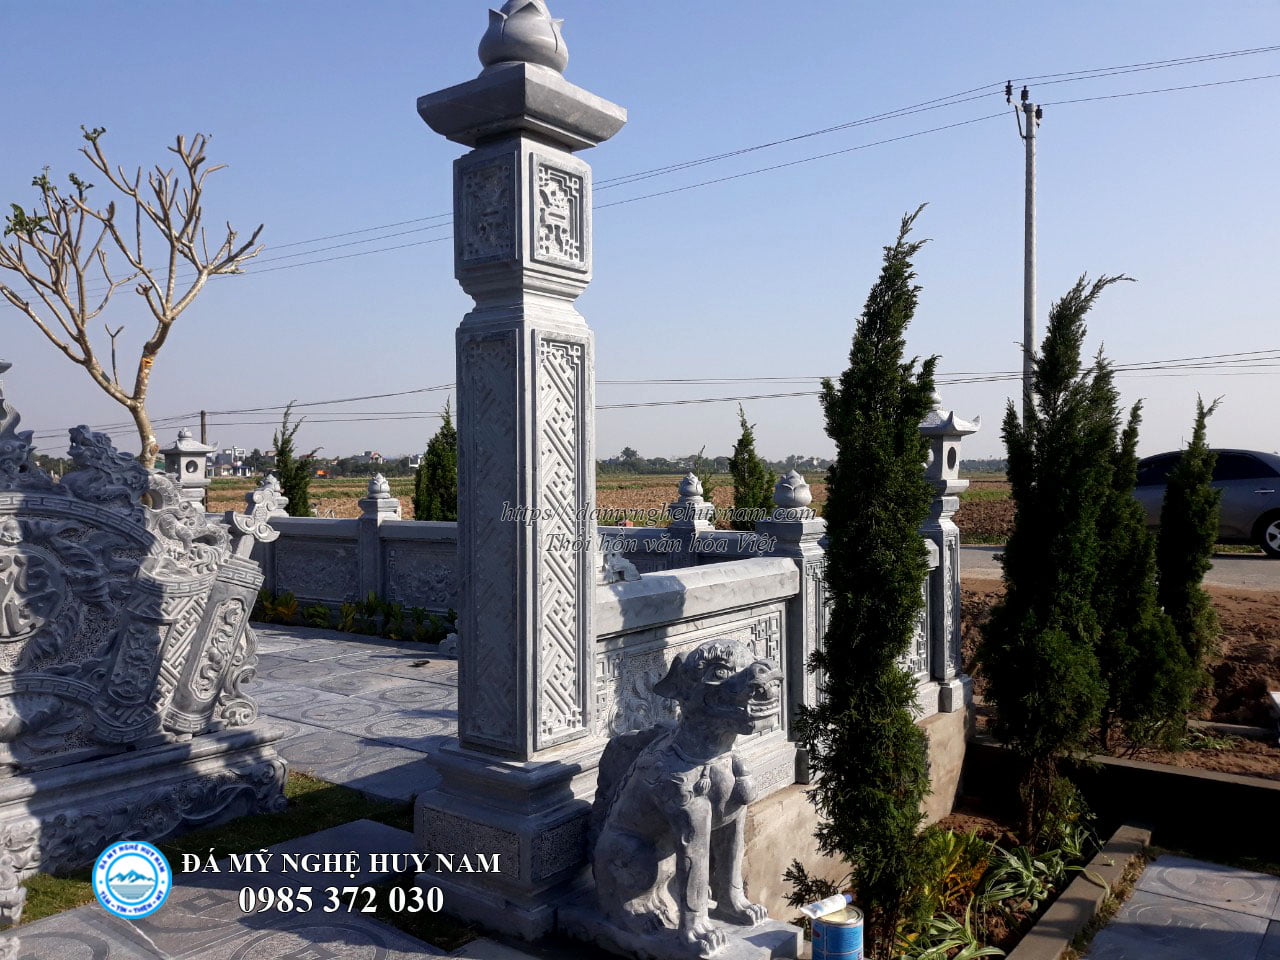 Cột cổng đá Khu lăng mộ Nam Định Phía trước là Con nghê đá Canh Cổng